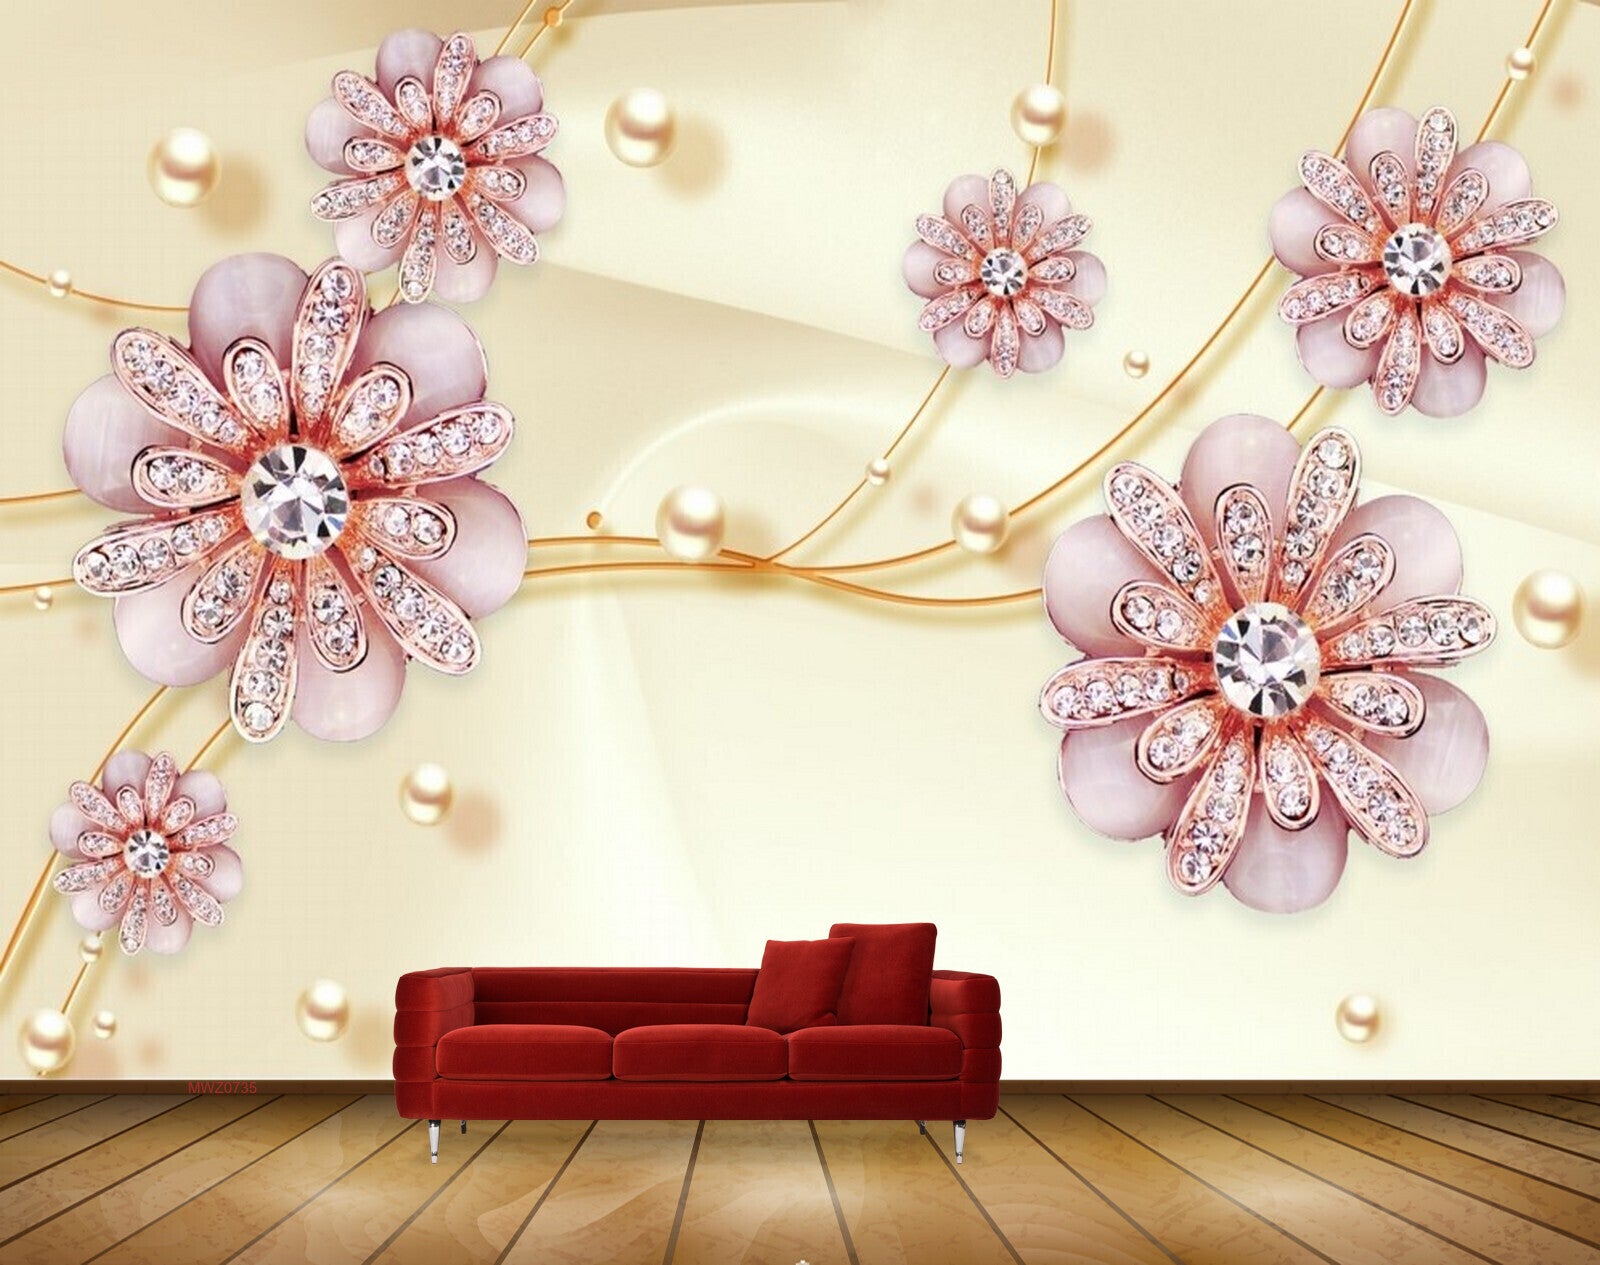 Avikalp MWZ0735 Pink Flowers Pearls 3D HD Wallpaper